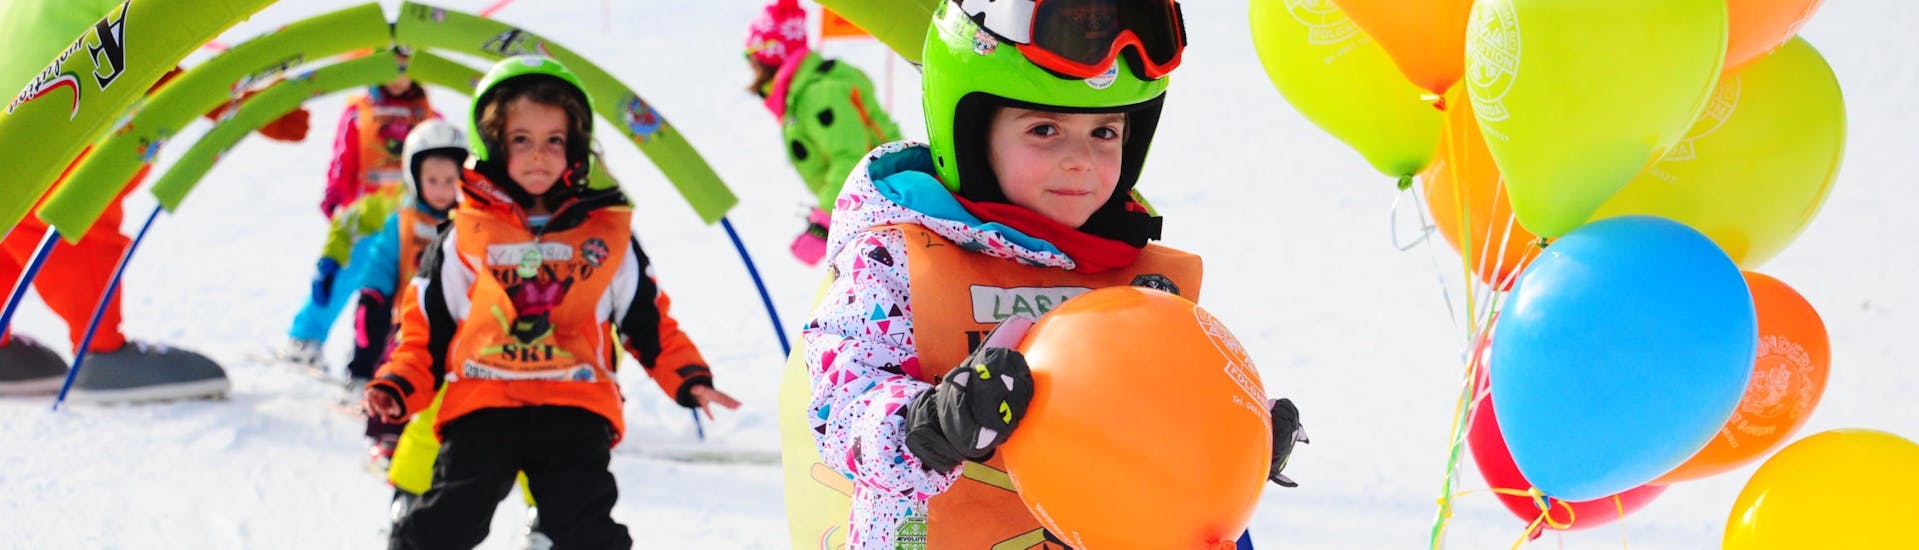 Der Kinder Skikurs (4-13 Jahre) - Alle Levels der Skischule AEvolution Folgarida finden im Schulcamp statt; das Mädchen hat die Hindernisse überwunden und sich einen Ballon verdient.